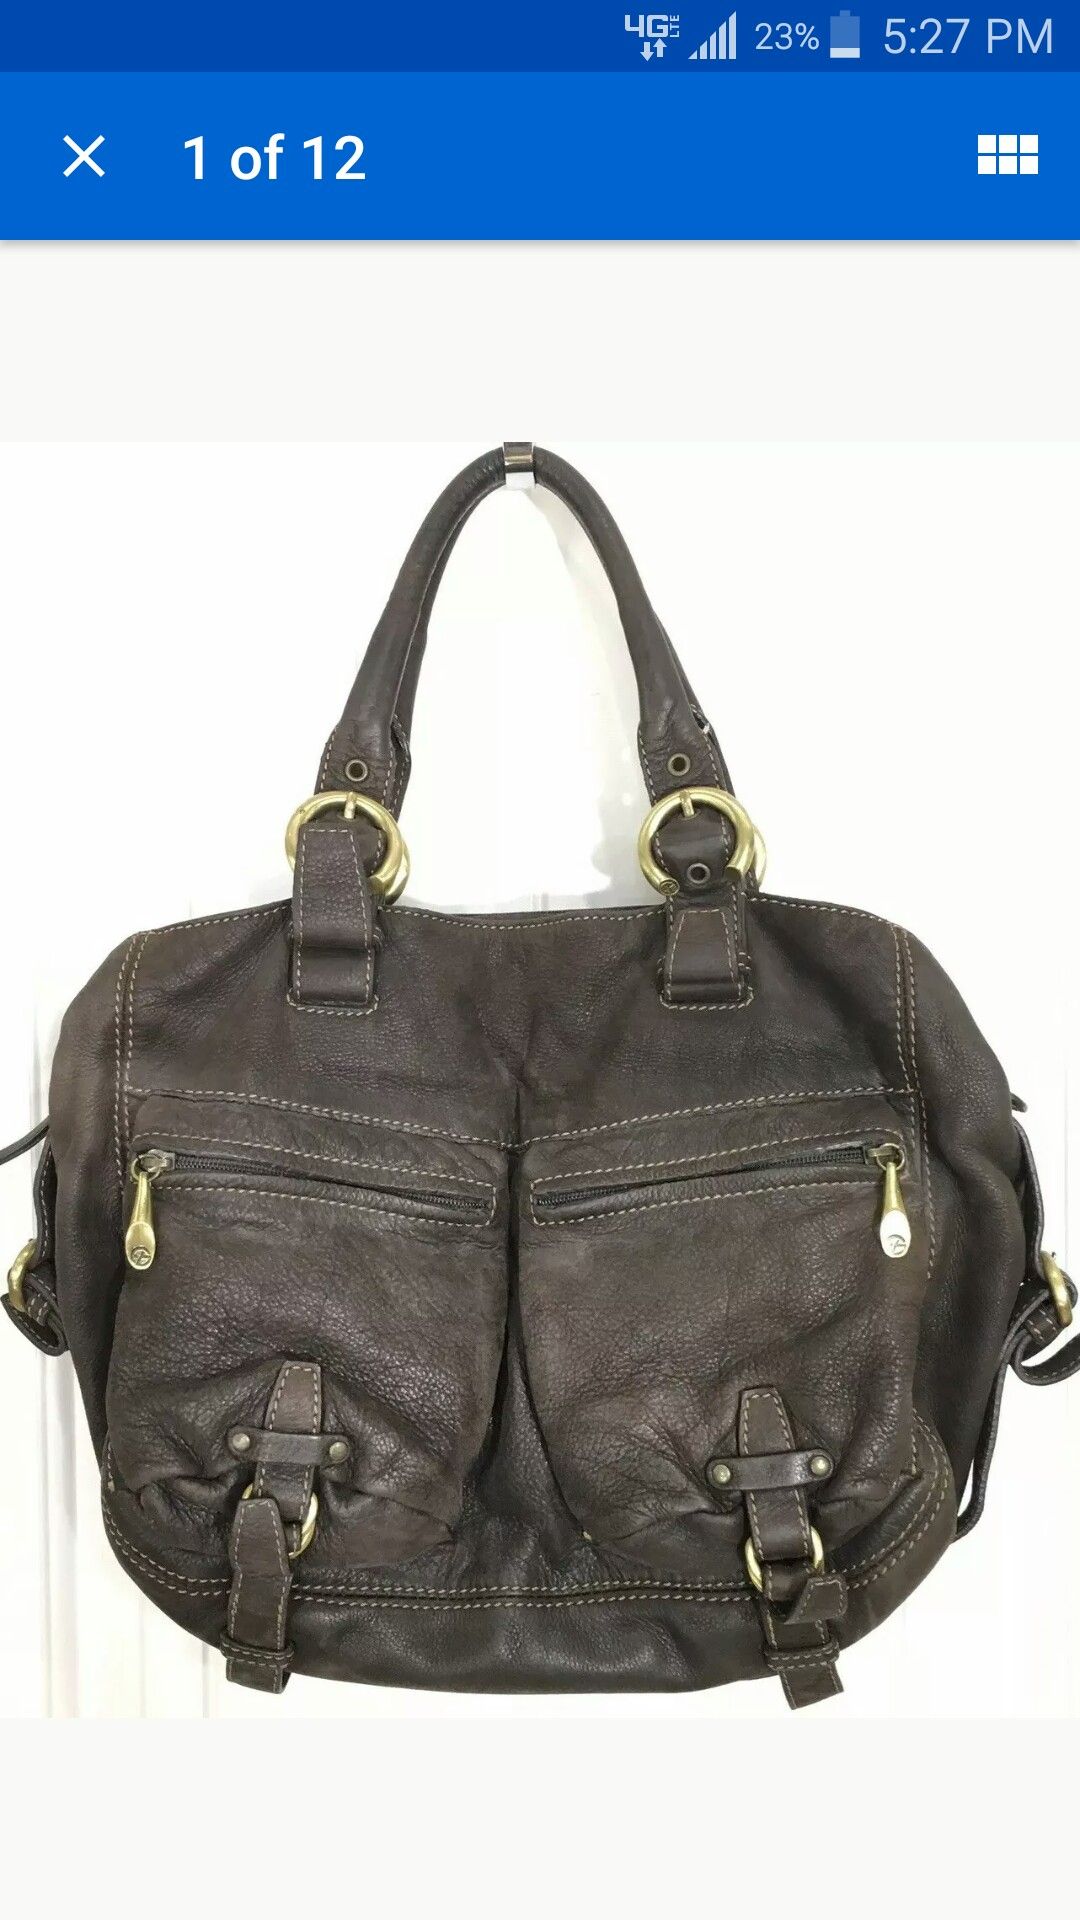 Francesco Biasia Handbag Shoulder Bag Women's Large Brown Leather Double Military Pocket Satchel Hobo -